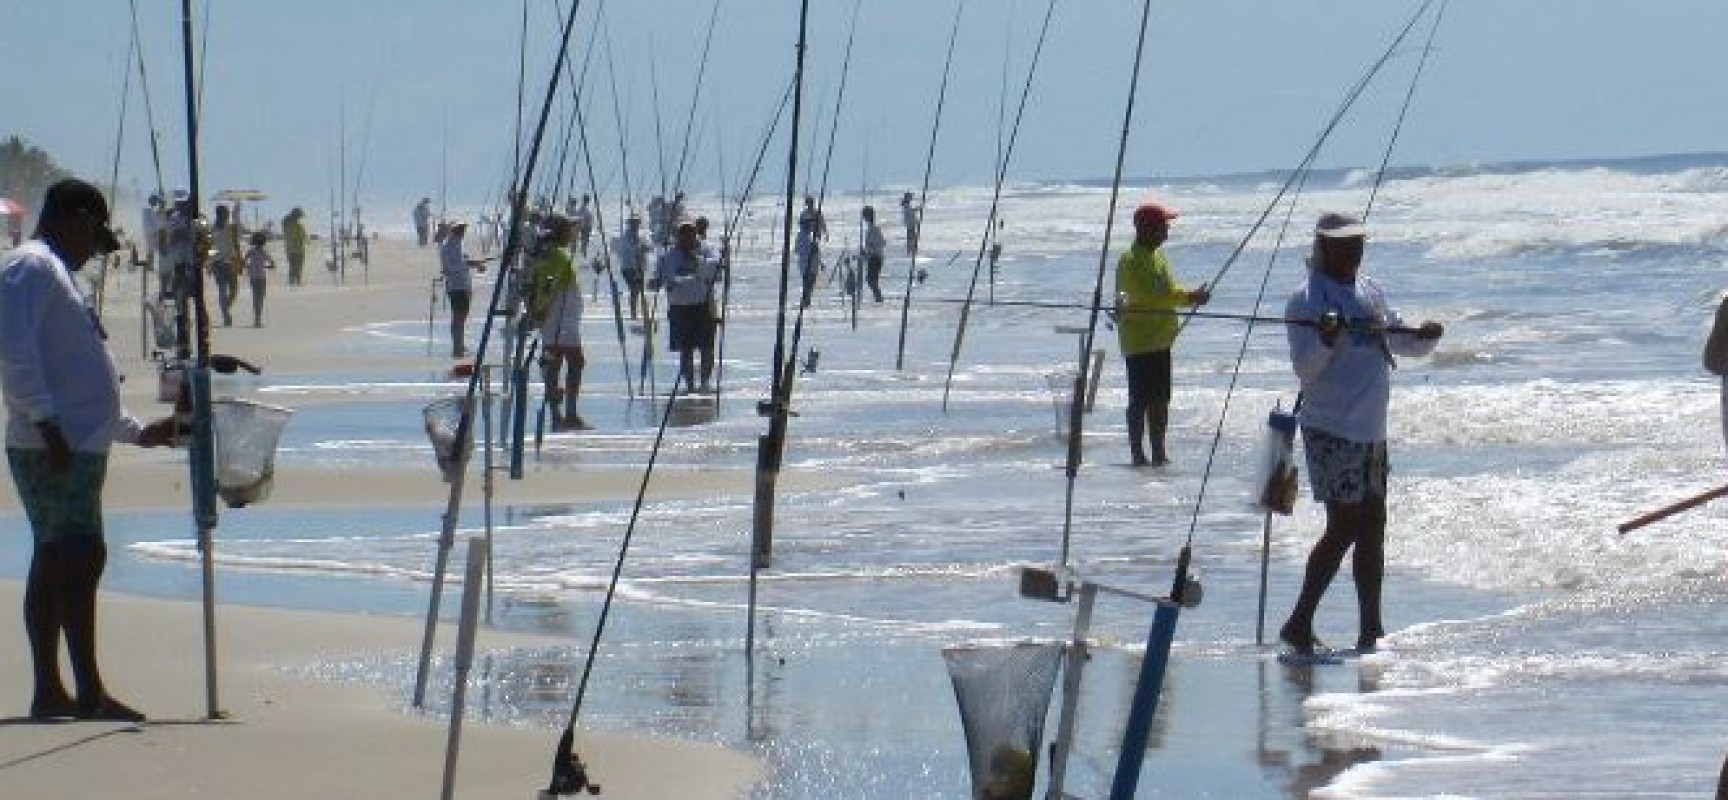 Campeonato Brasileiro de Pesca de Terra Firme, será em Ilhéus, pela segunda vez